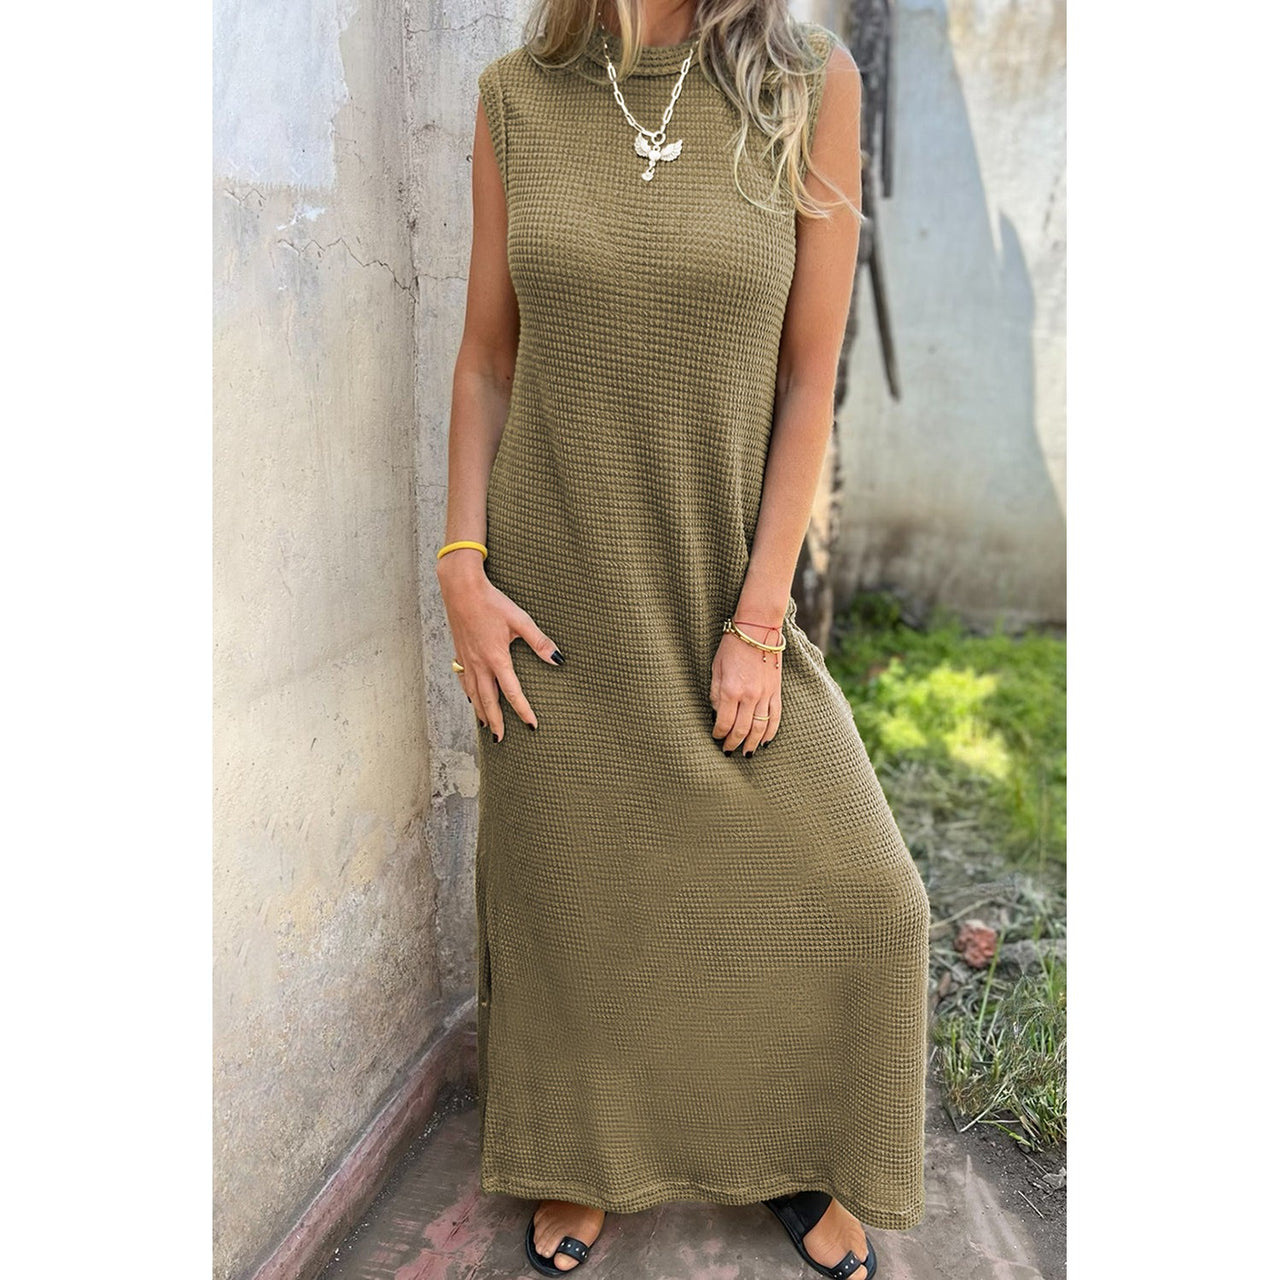 Dear Lover Women's Waffle Knit Sleeveless Long Dress w/Slits - Jungle Green